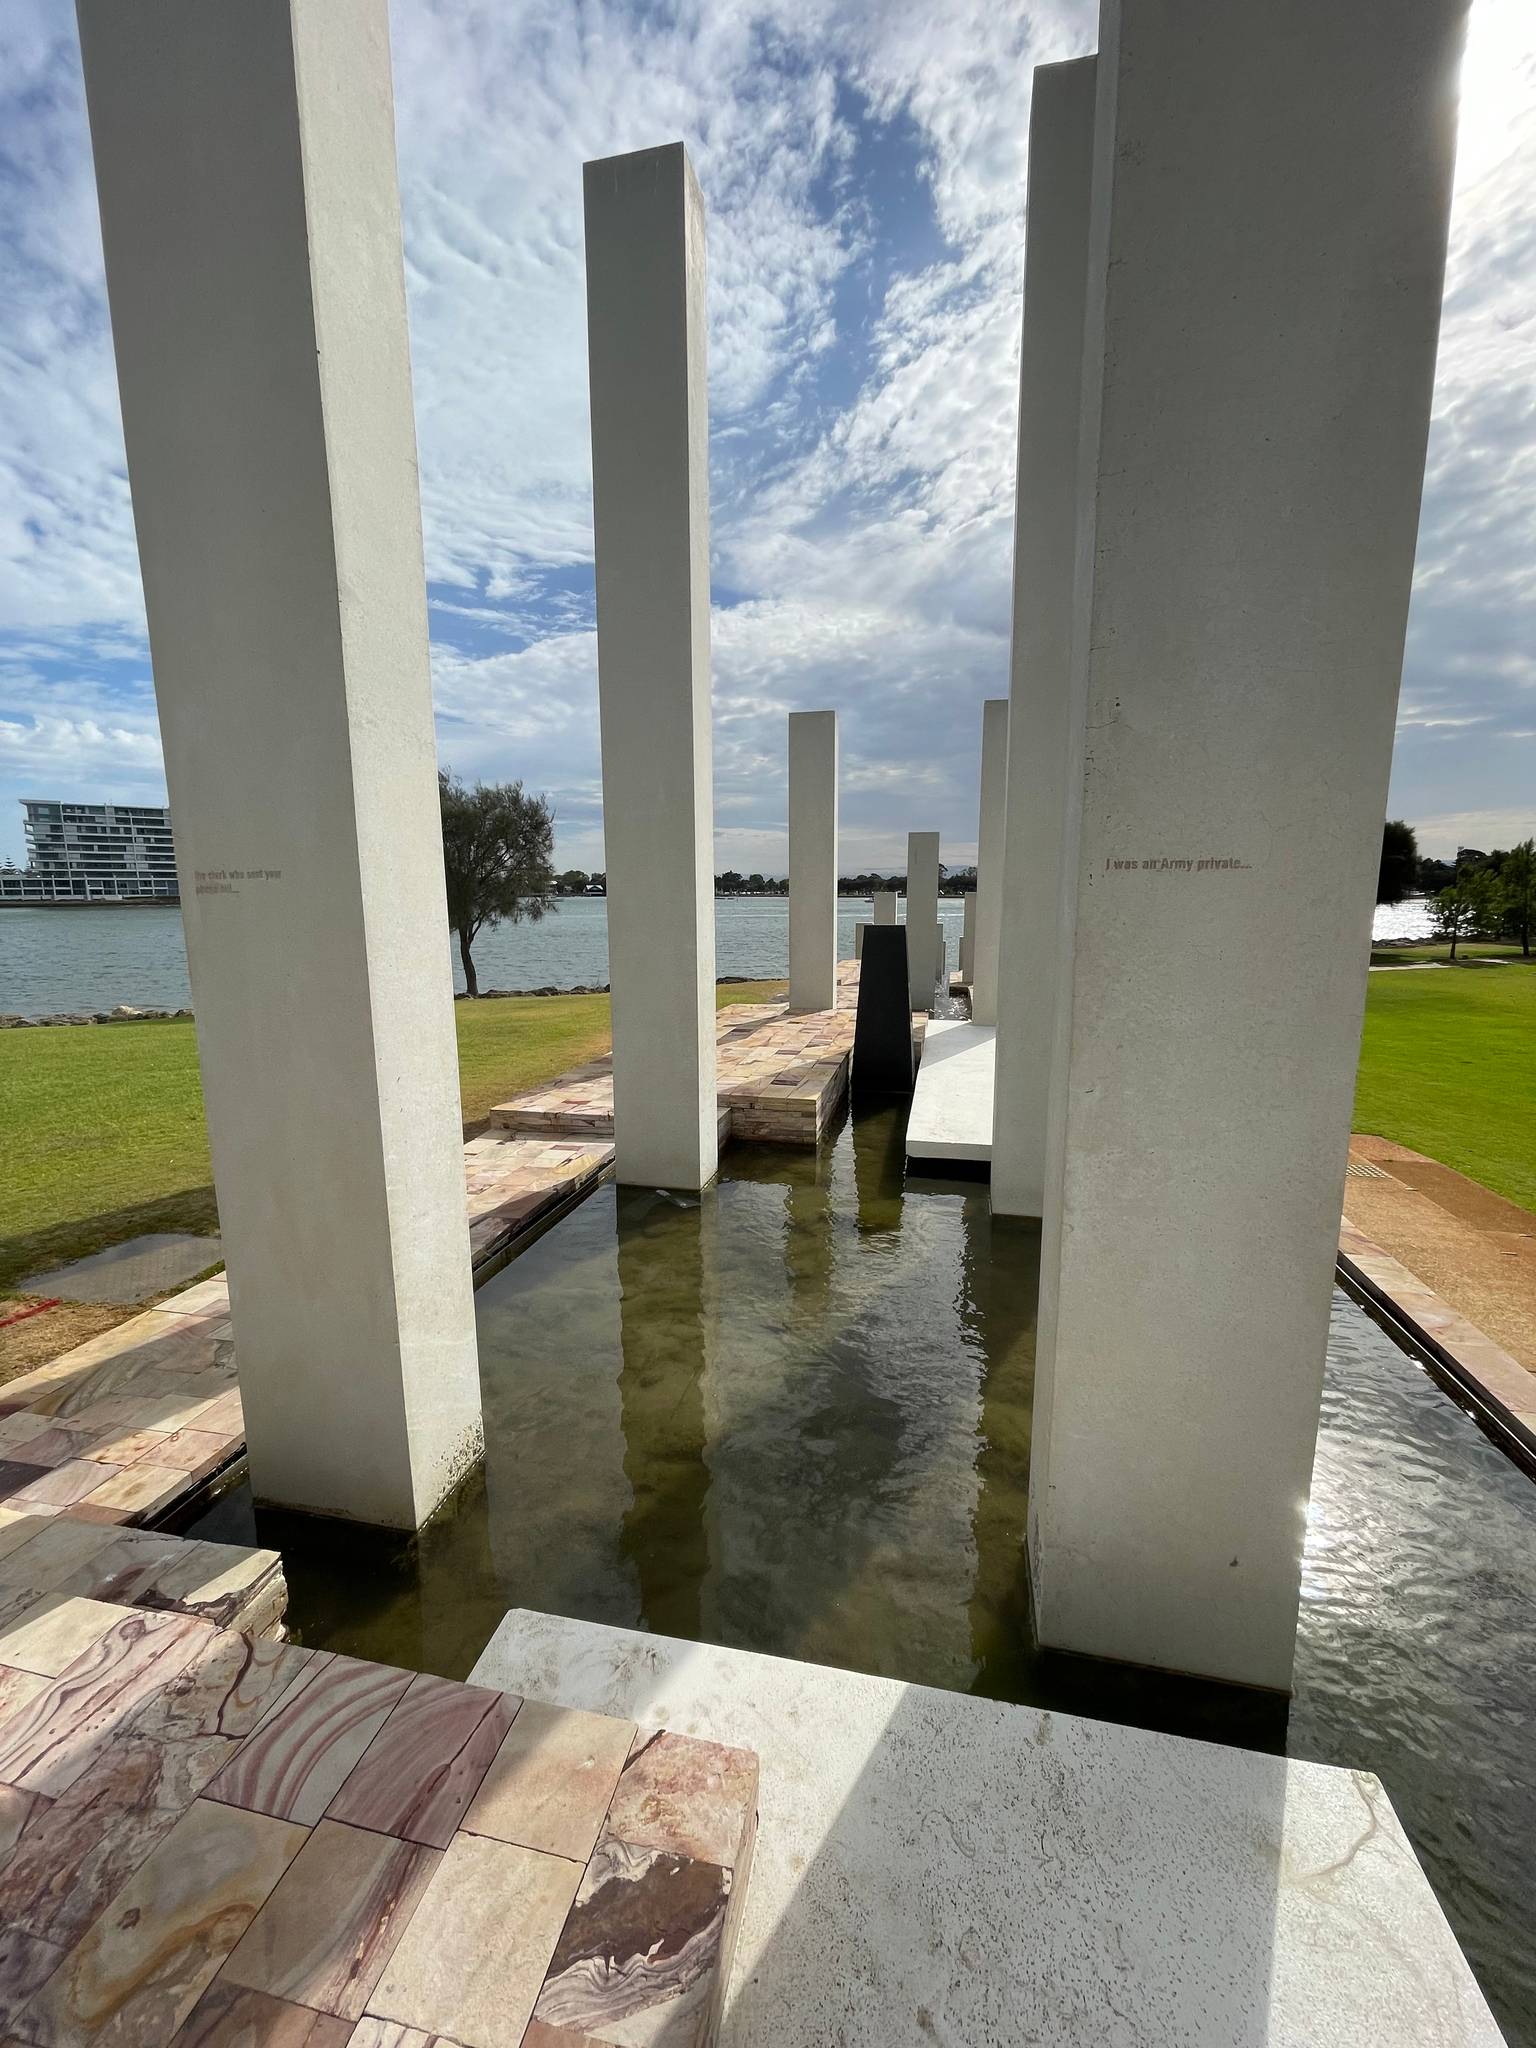 &mdash;Mandurah War Memorial